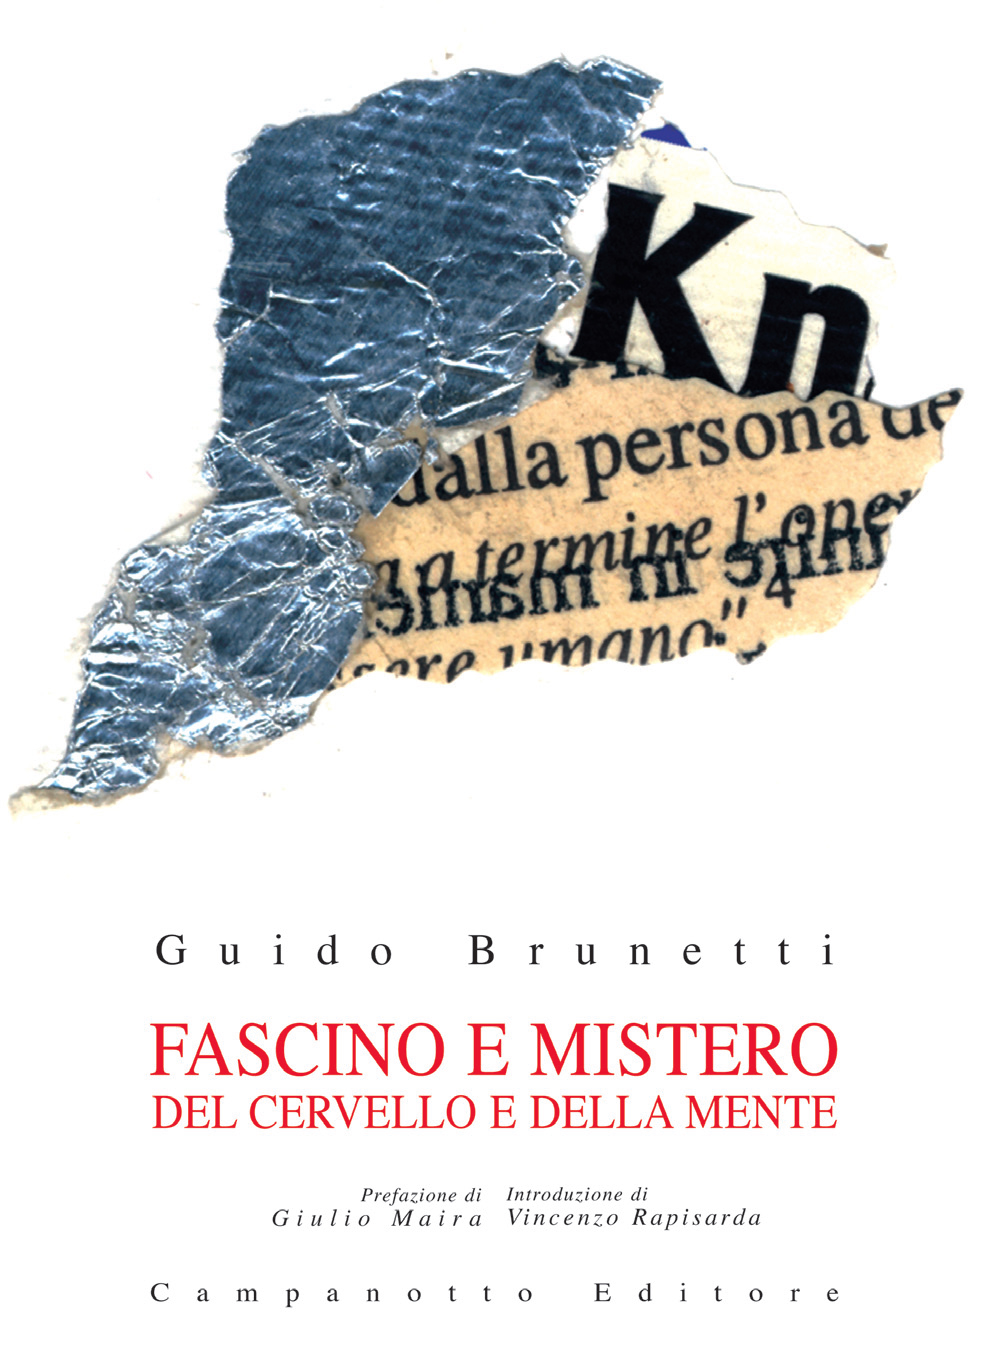 Libri Guido Brunetti - Fascino E Mistero Del Cervello E Della Mente NUOVO SIGILLATO, EDIZIONE DEL 30/06/2020 SUBITO DISPONIBILE